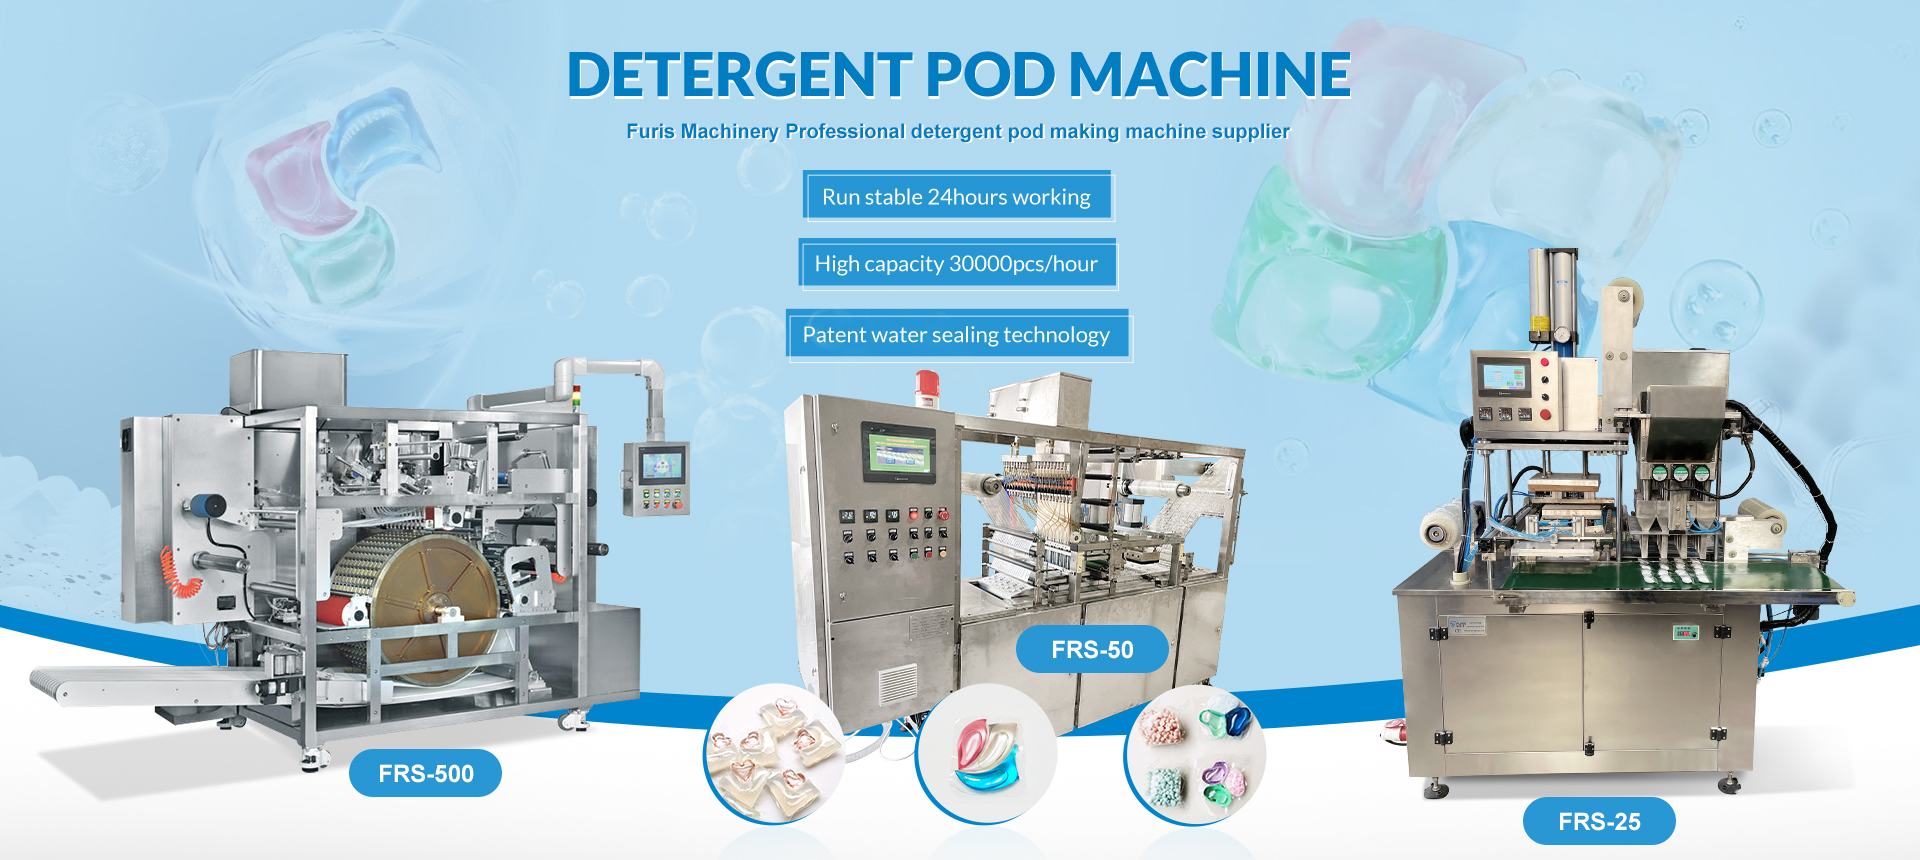 detergent pod machine